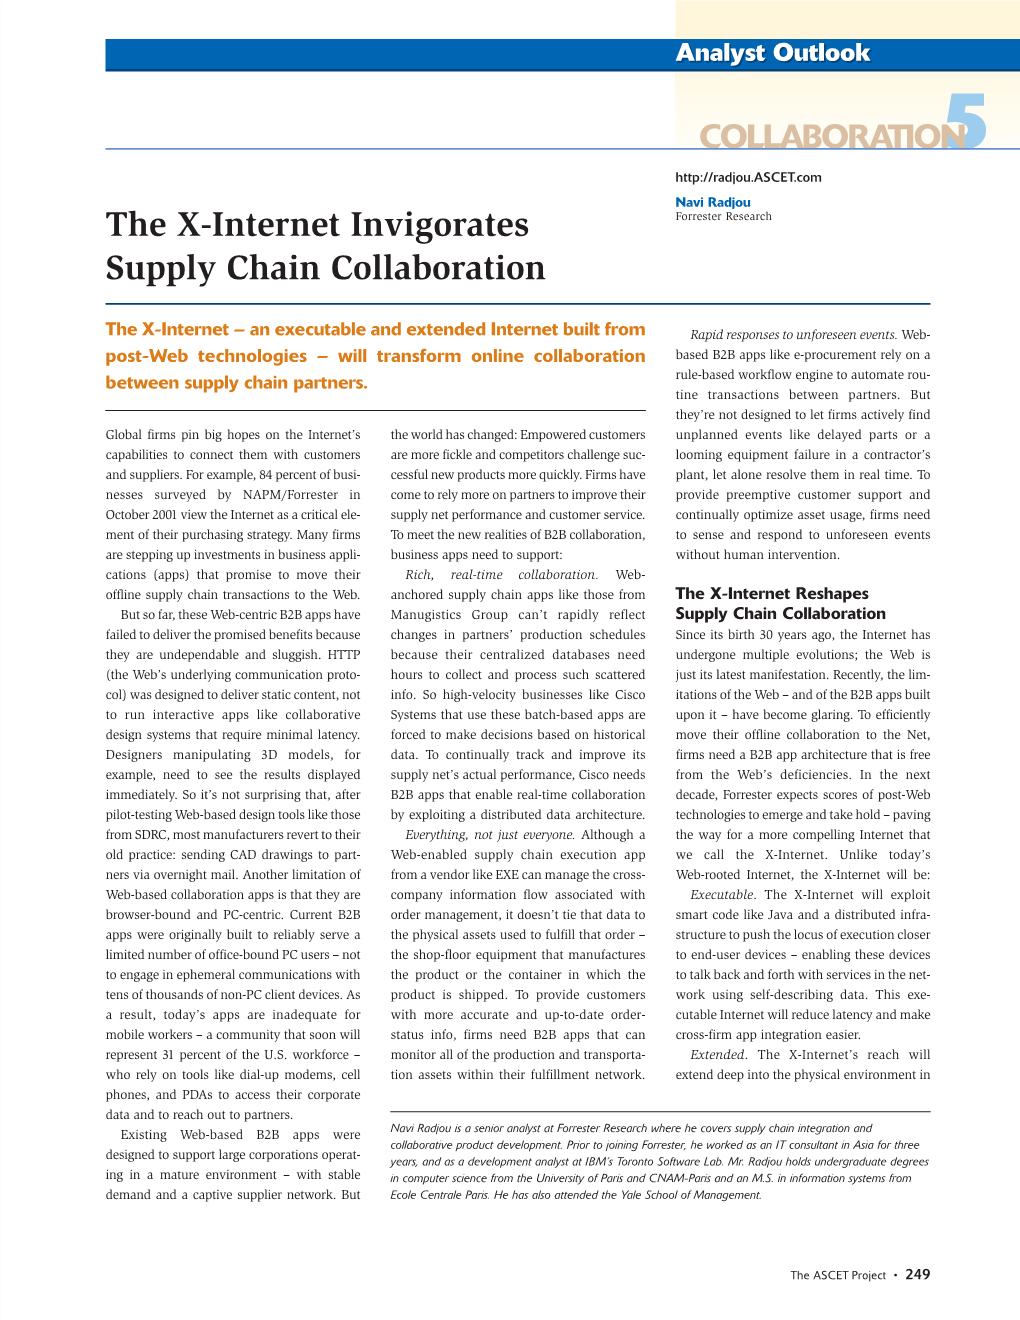 The X-Internet Invigorates Supply Chain Collaboration